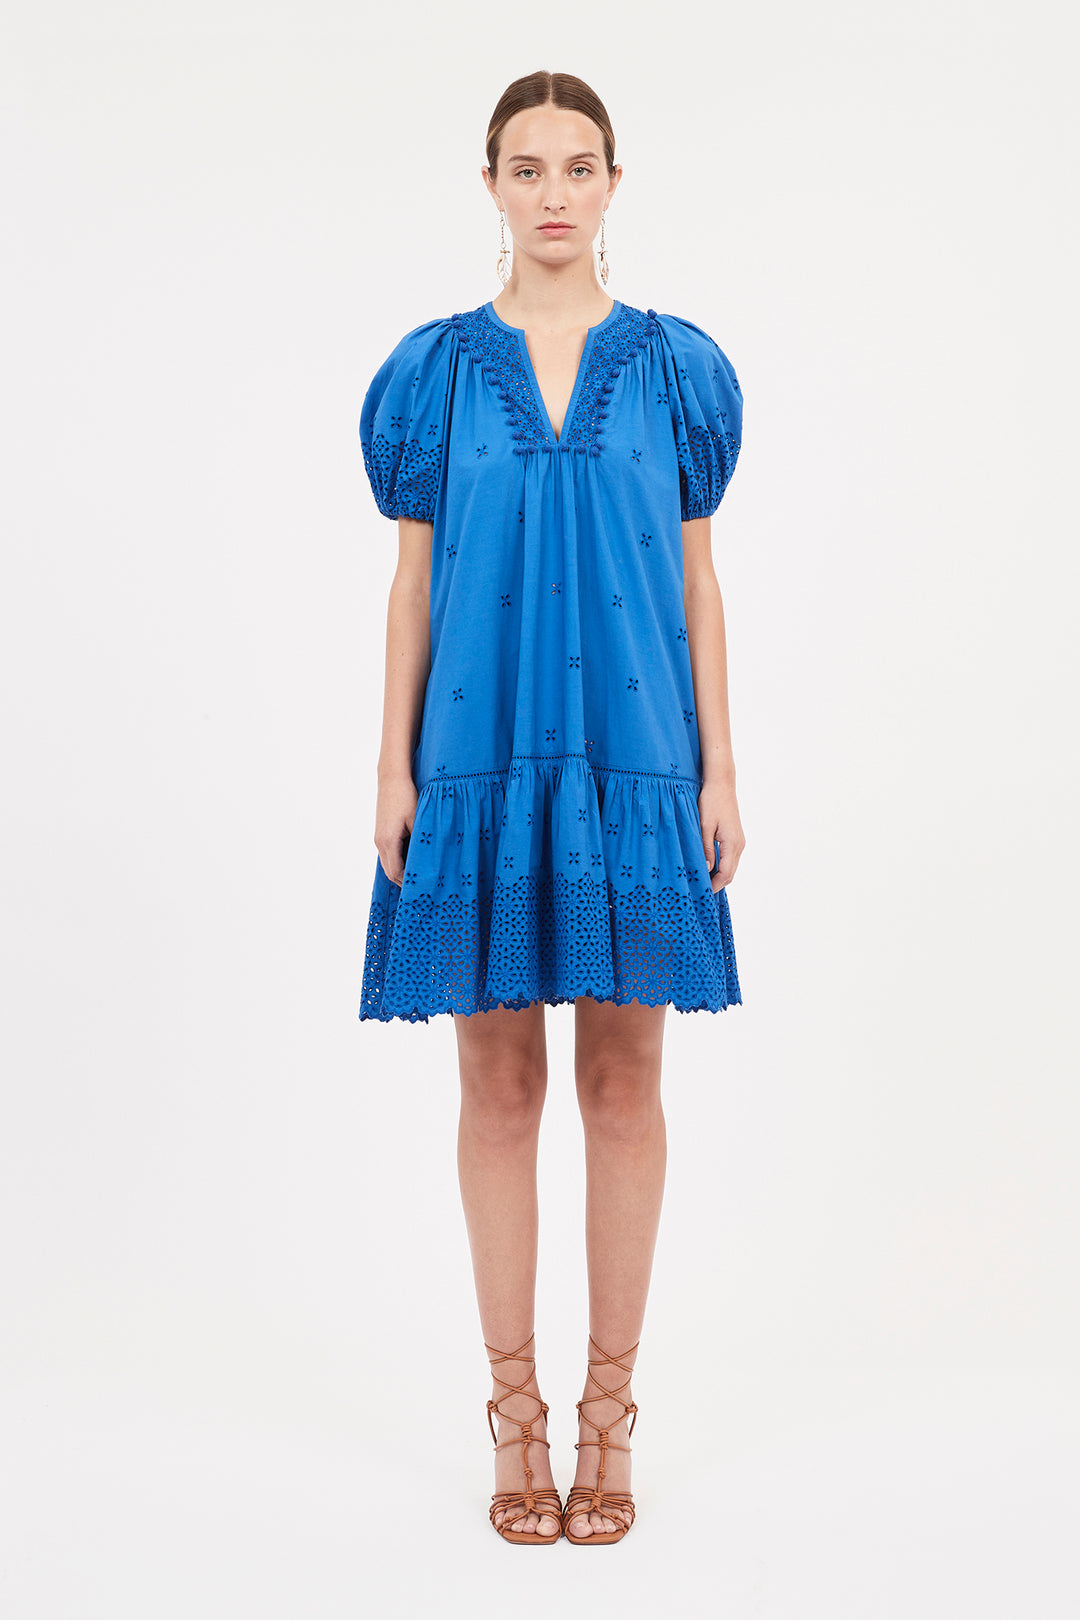 Ulla Johnson - Aurora Dress in Cobalt